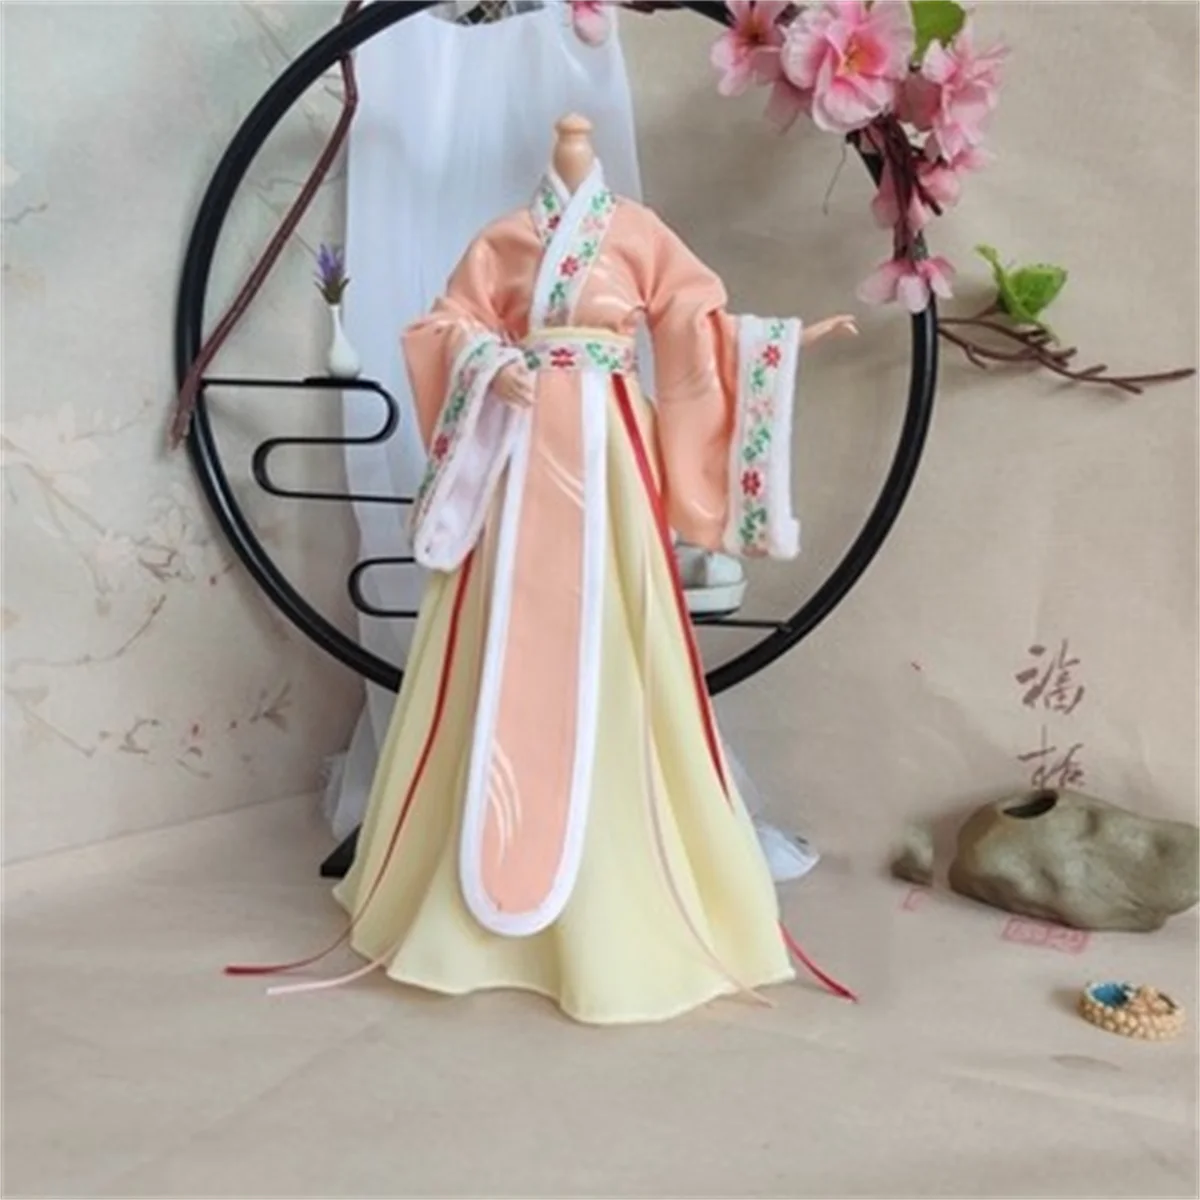 длинное платье в масштабе 1/6 женский китайский наряд ханьфу древний костюм юбка одежда косплей кукла модель fit солдат фигурка